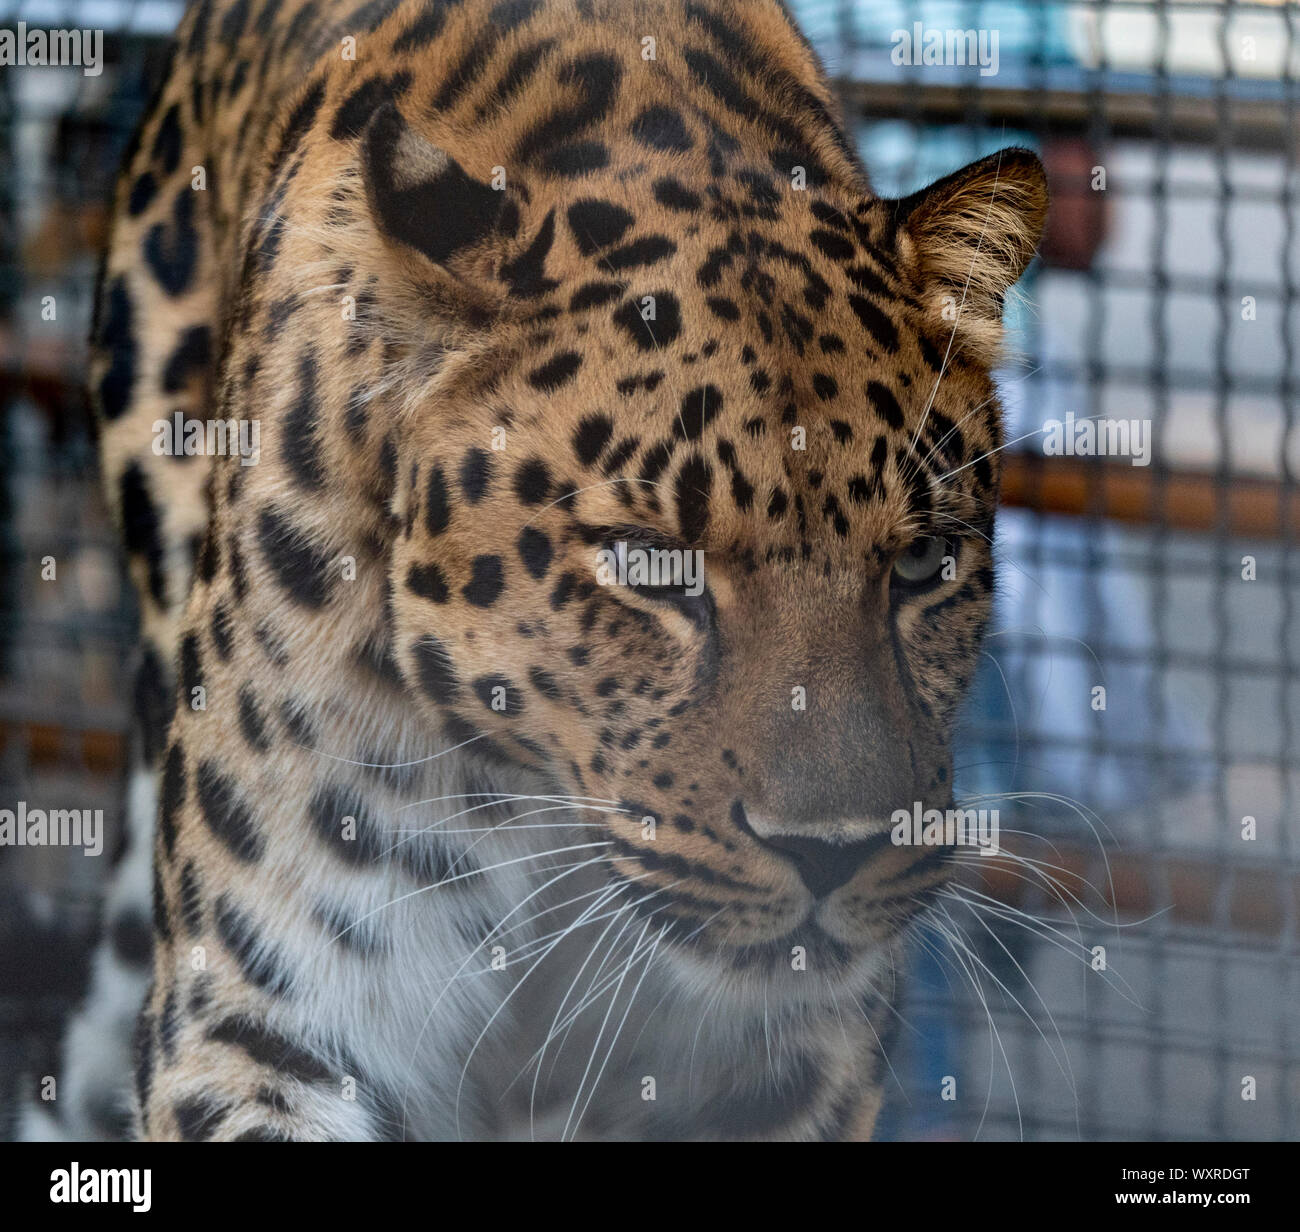 Jaguar antes del ataque a la víctima se prepara para saltar. Foto de stock